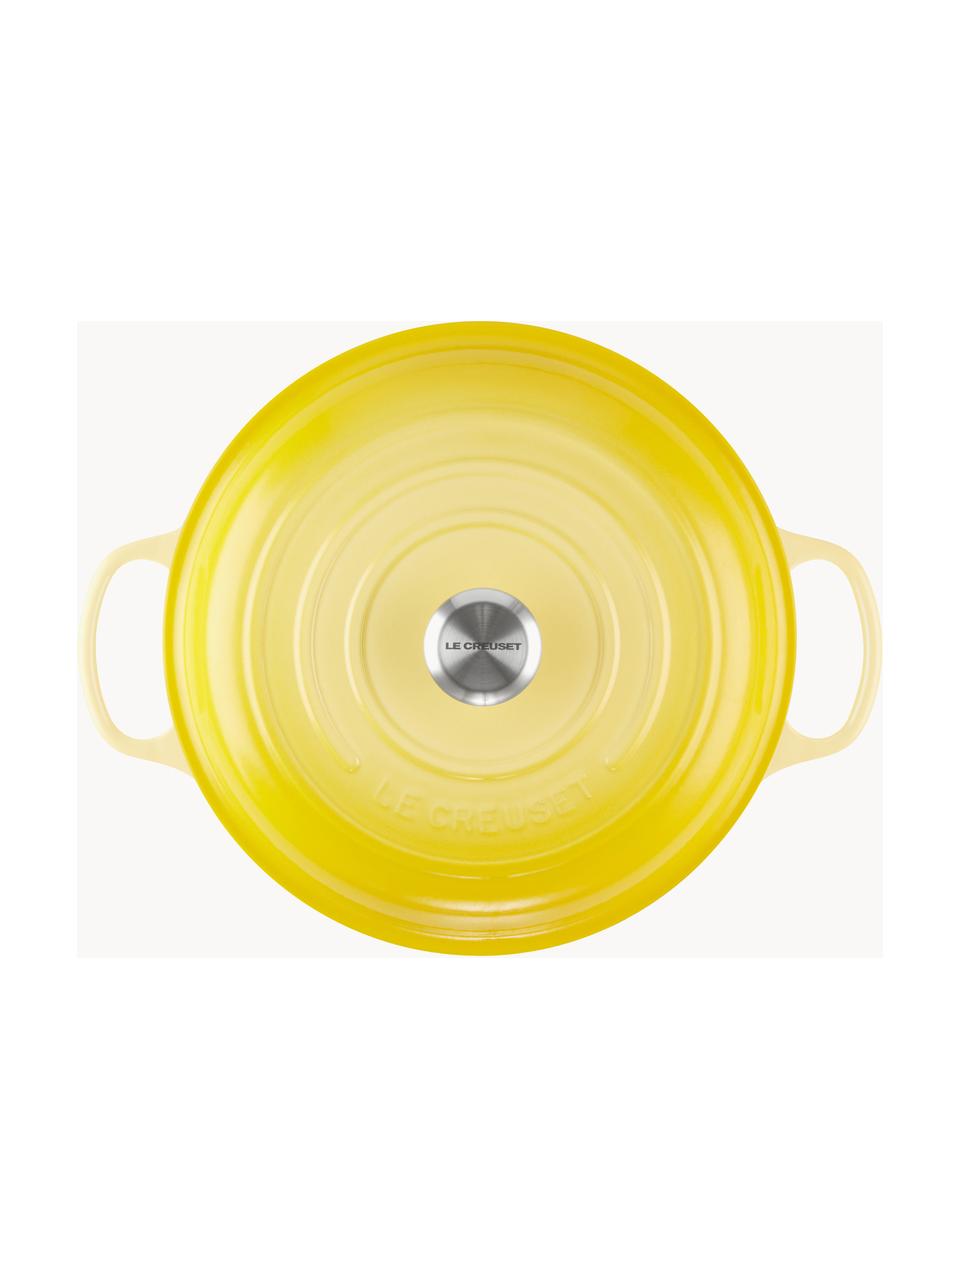 Litinový hrnec Gourmet Signature Collection, Smaltovaná litina, Odstíny žluté, Ø 30 cm, V 12 cm